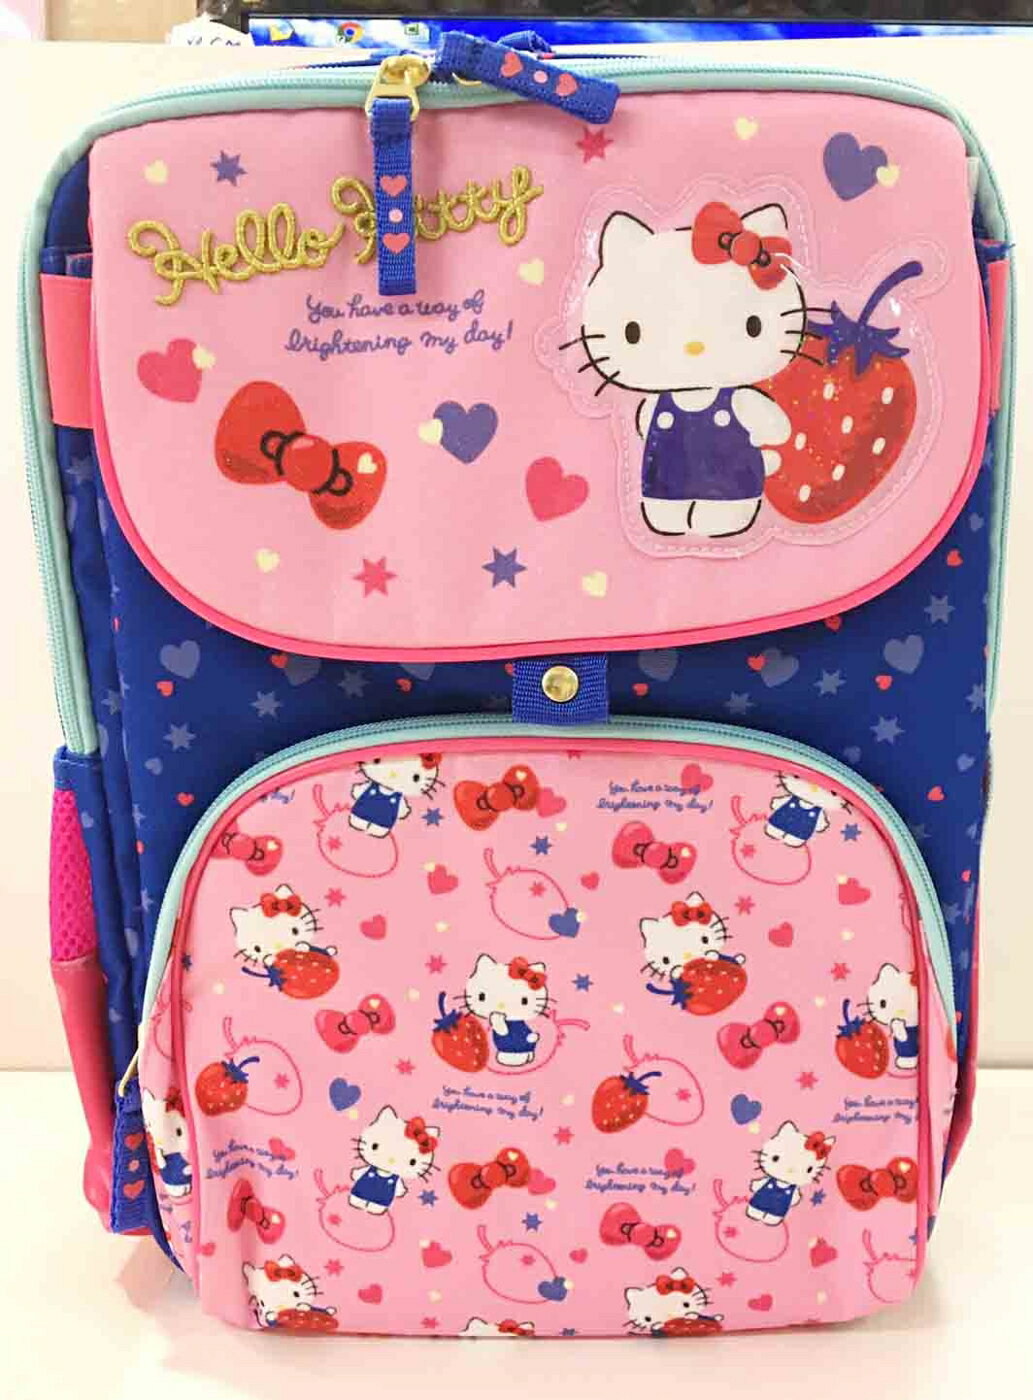 【震撼精品百貨】Hello Kitty 凱蒂貓 KITTY後背包/書包 粉藍色 草莓#97722 震撼日式精品百貨